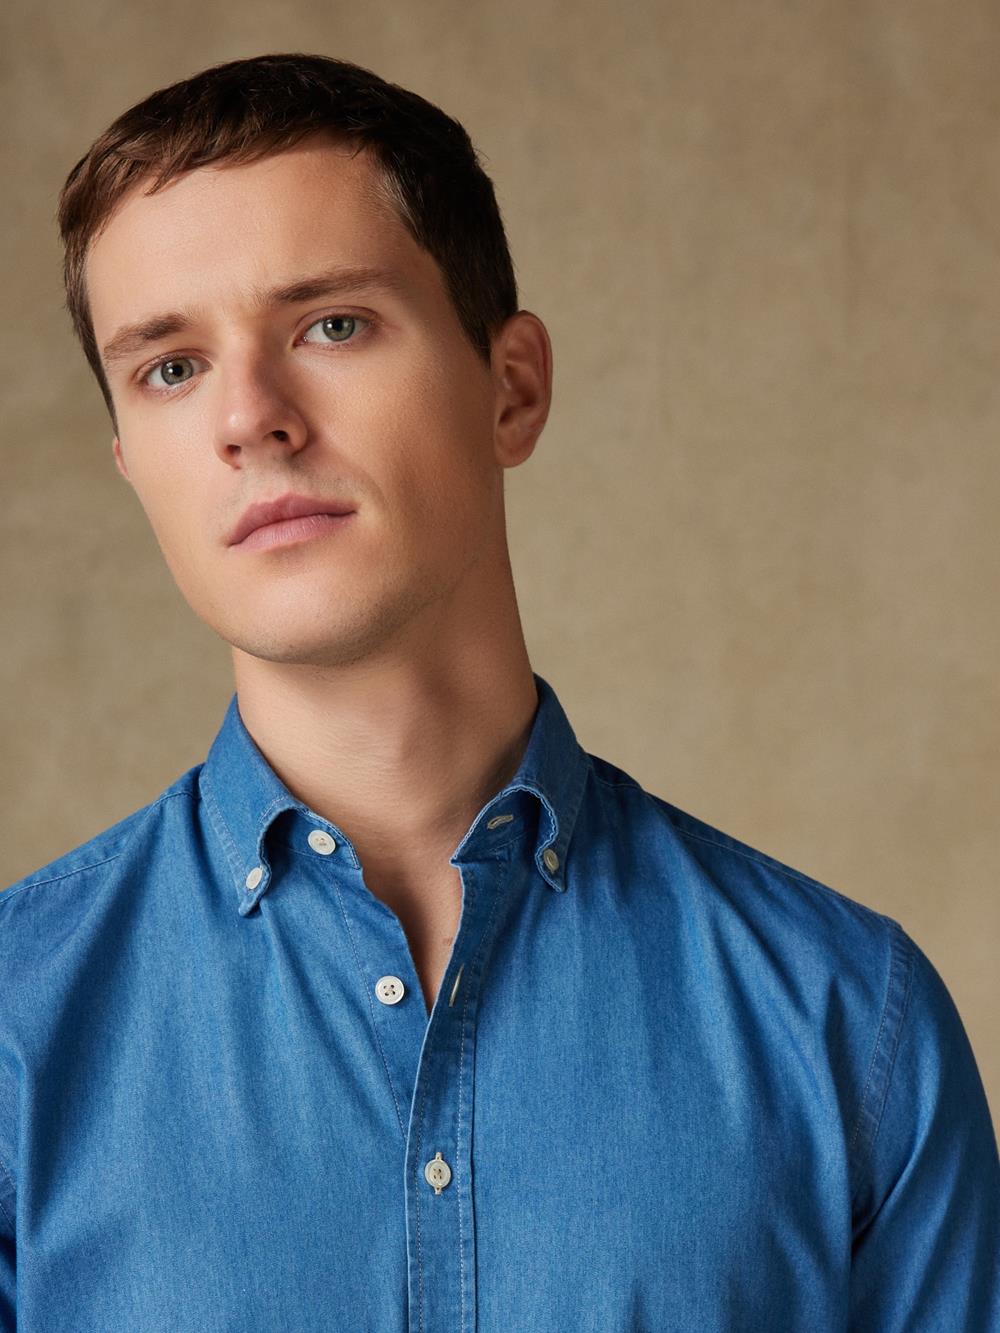 Tailliertes Tailliertes Hemd aus Denim himmelblau - Buttondown Kragen